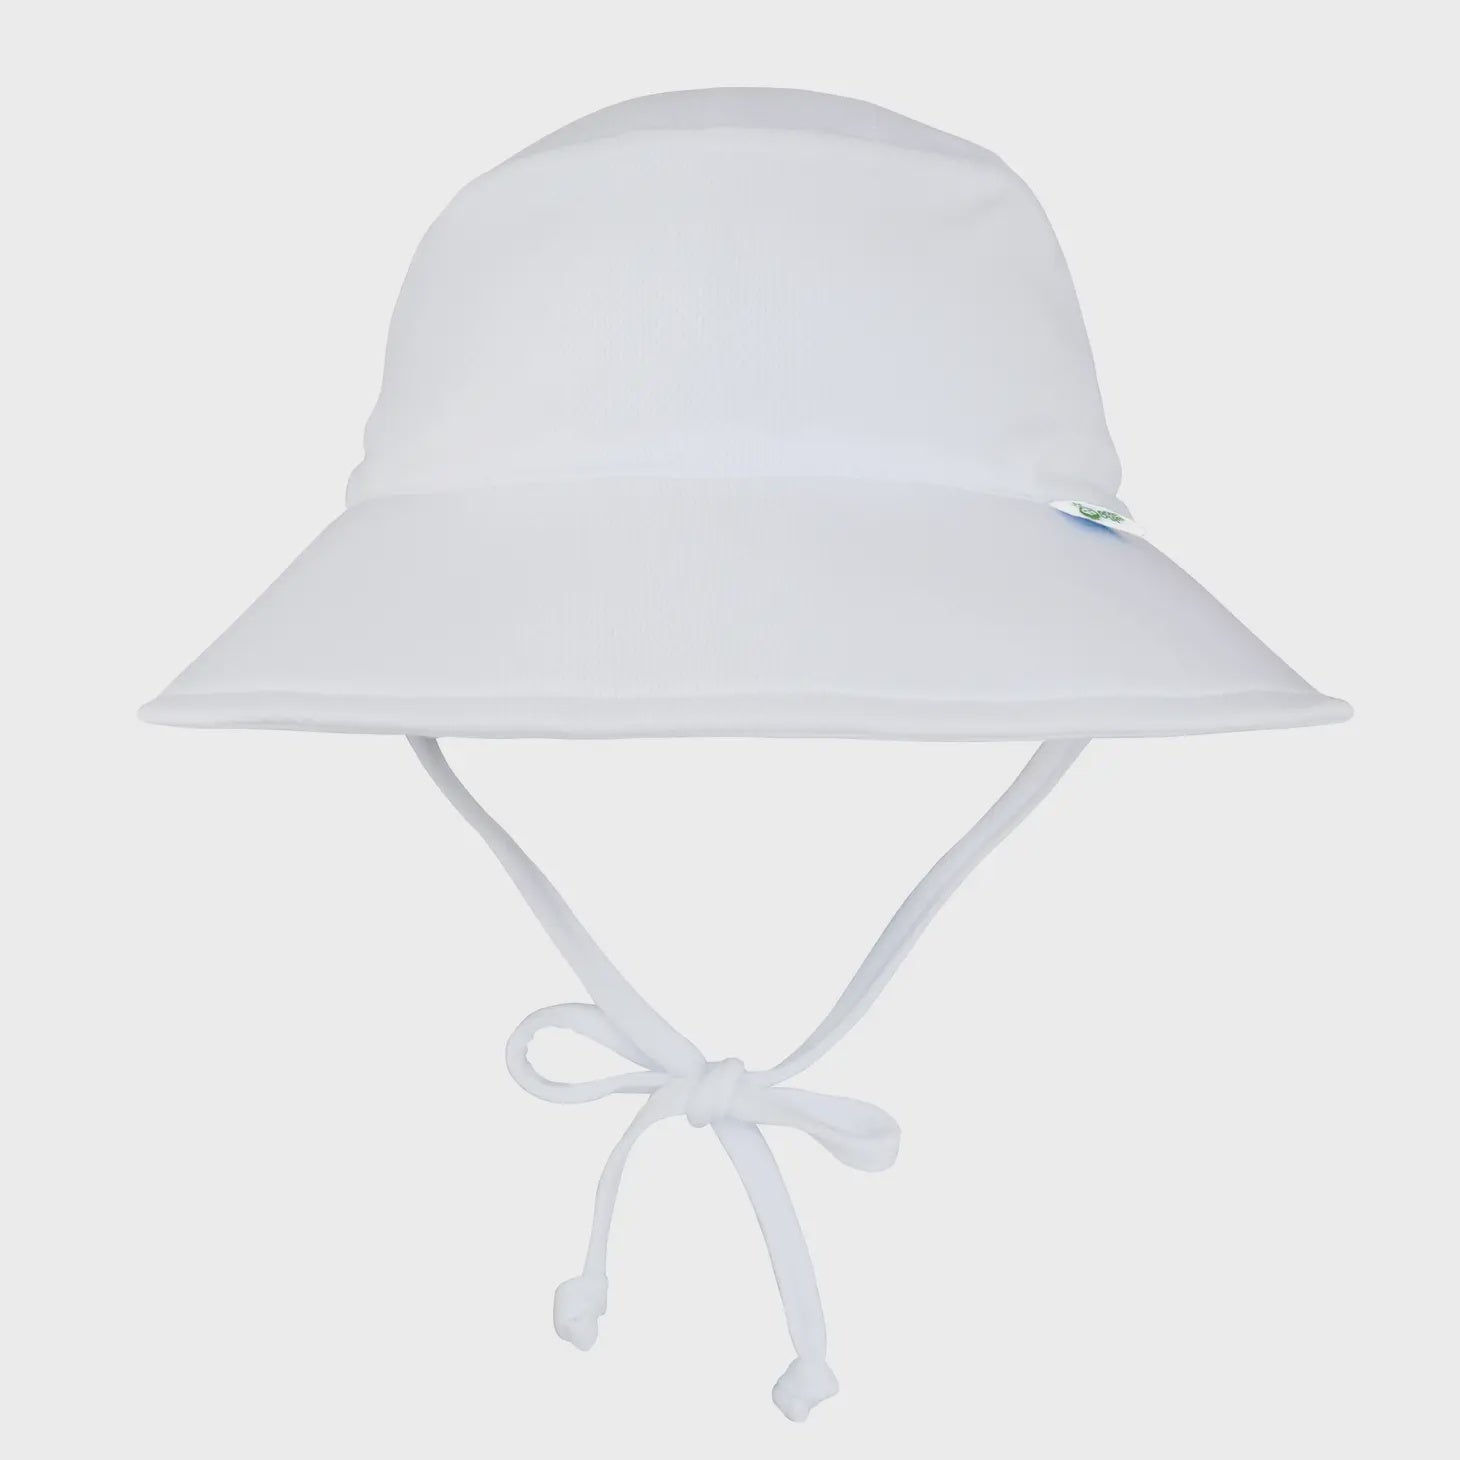 Sun Protection Hat, UPF 50+